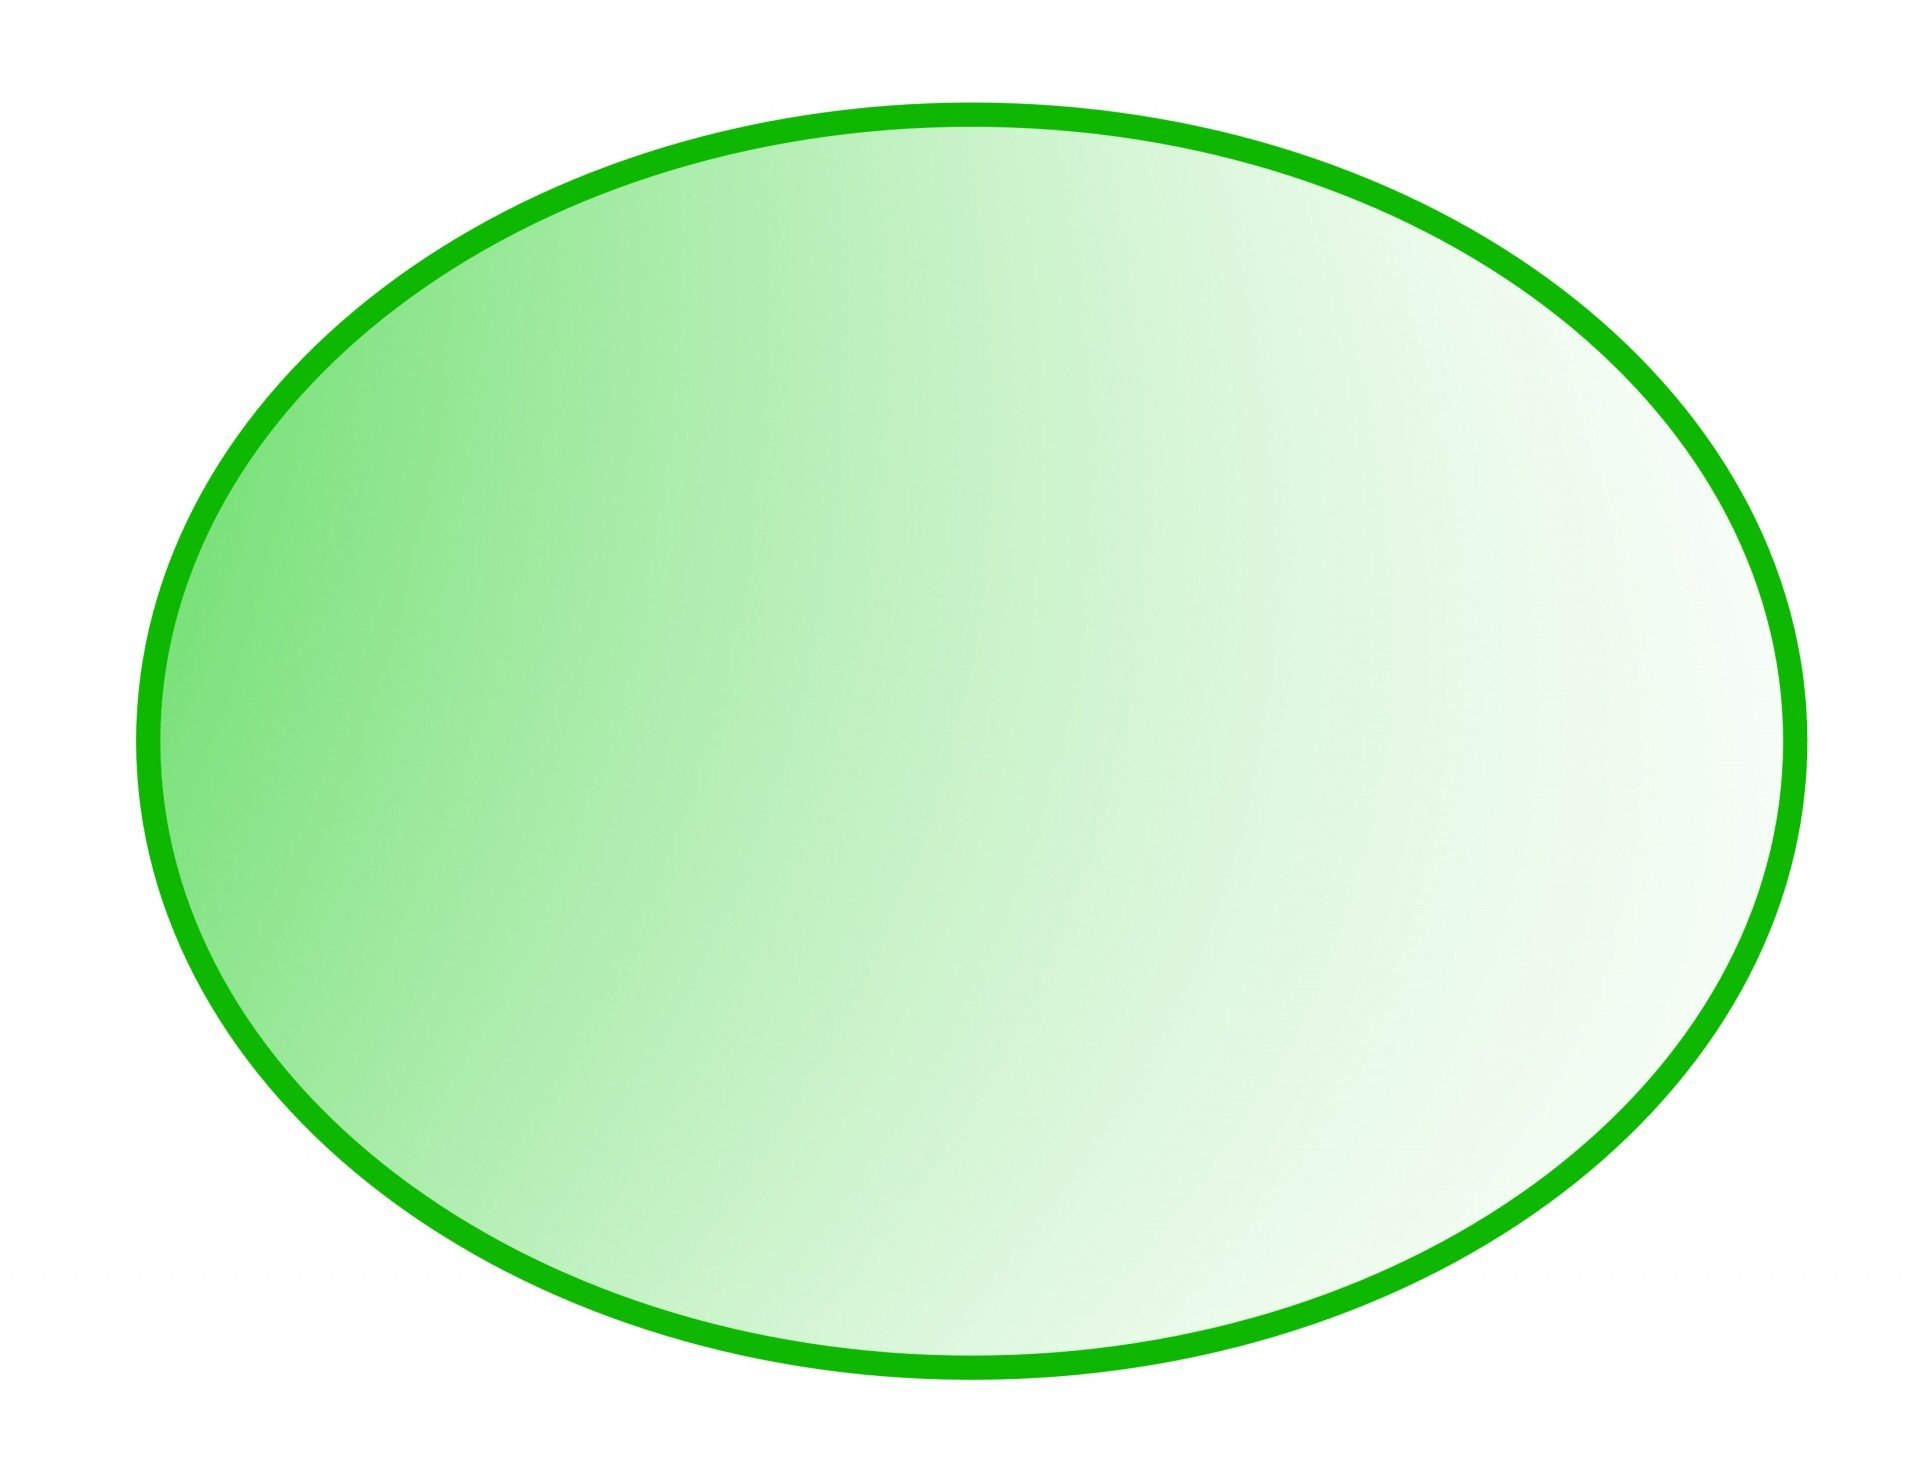 Продолговатый округлый. Геометрические фигуры овал. Овал зеленый. Зеленый круг на прозрачном фоне. Овал на прозрачном фоне.